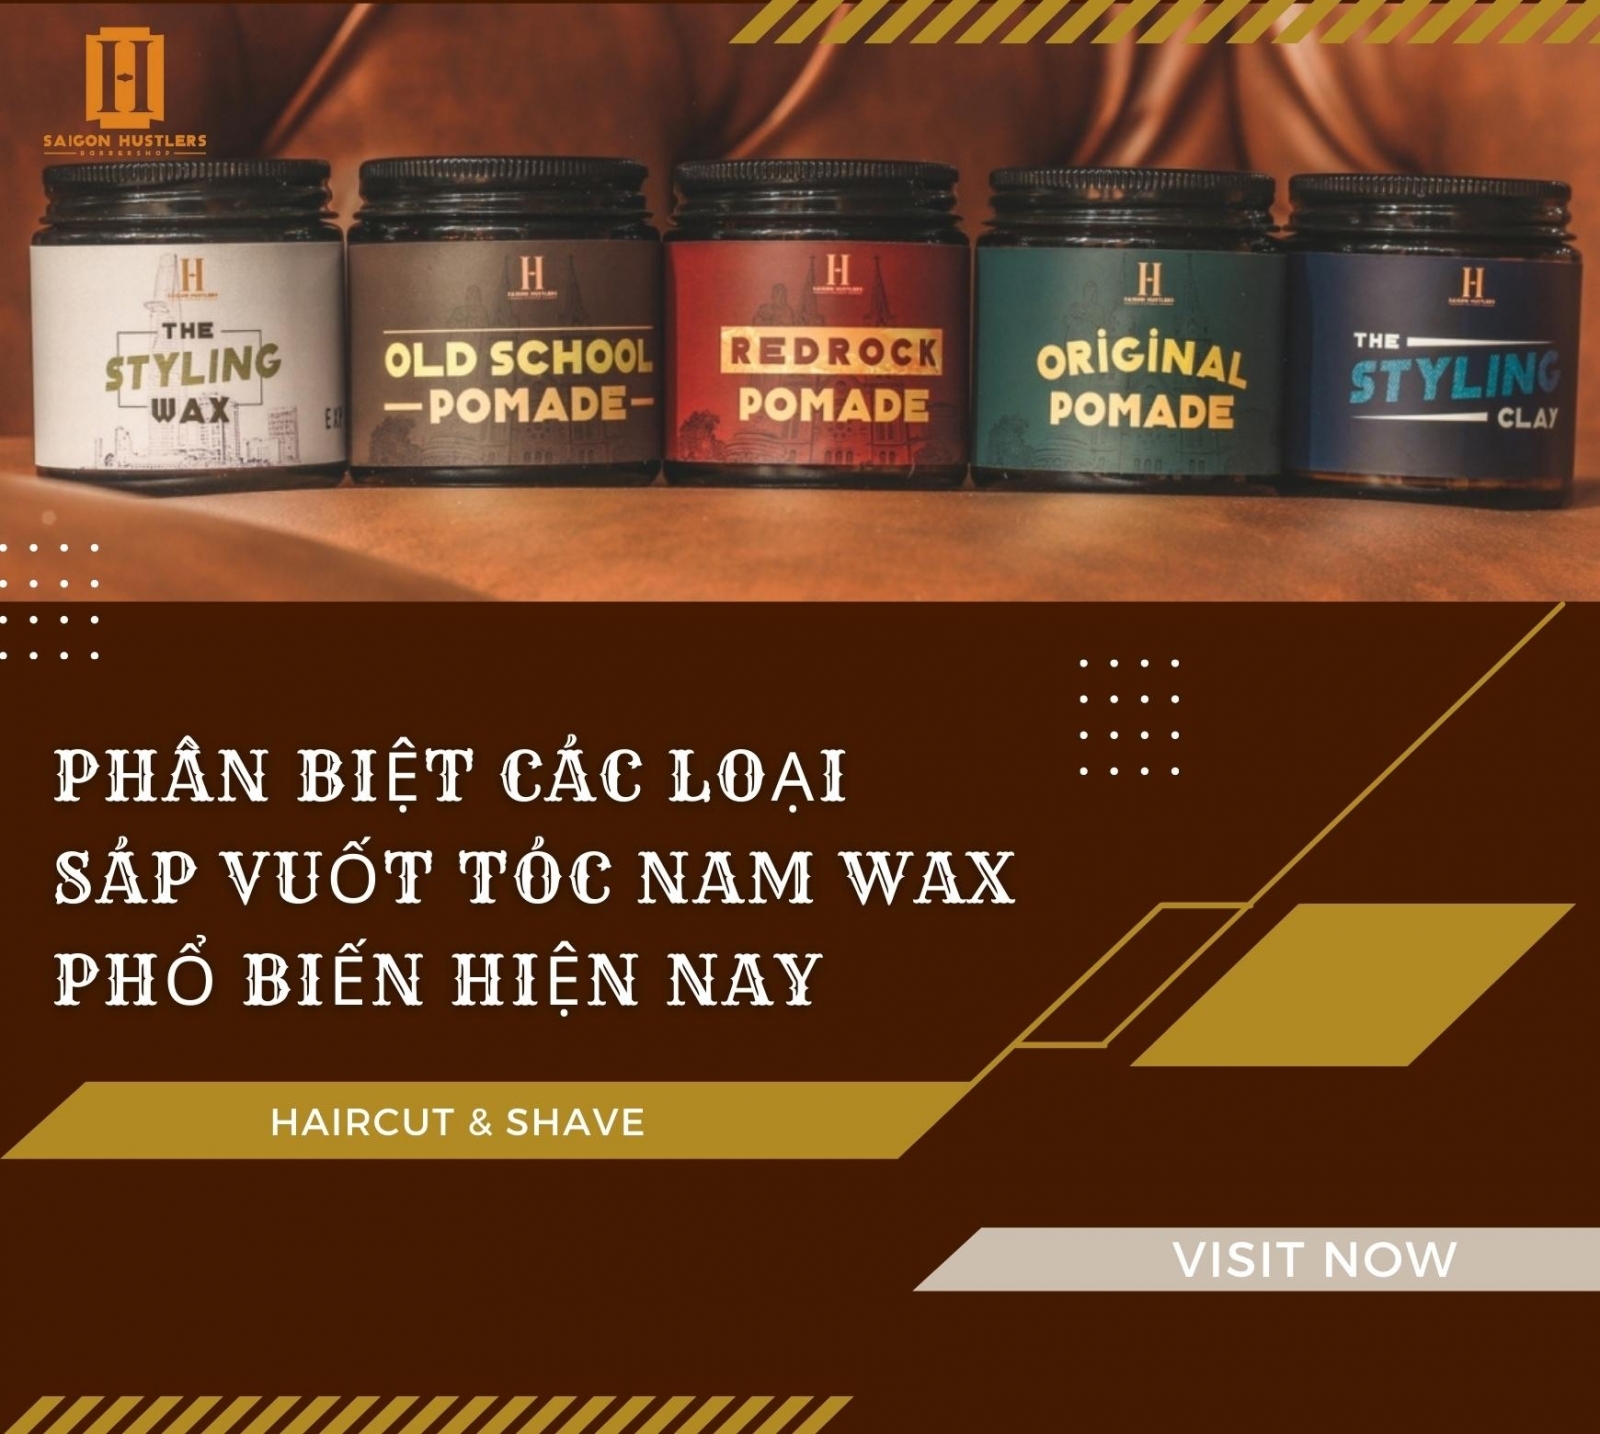 POMADEVN  Nhà cung cấp Pomade vuốt tóc chính hãng 1 Việt Nam